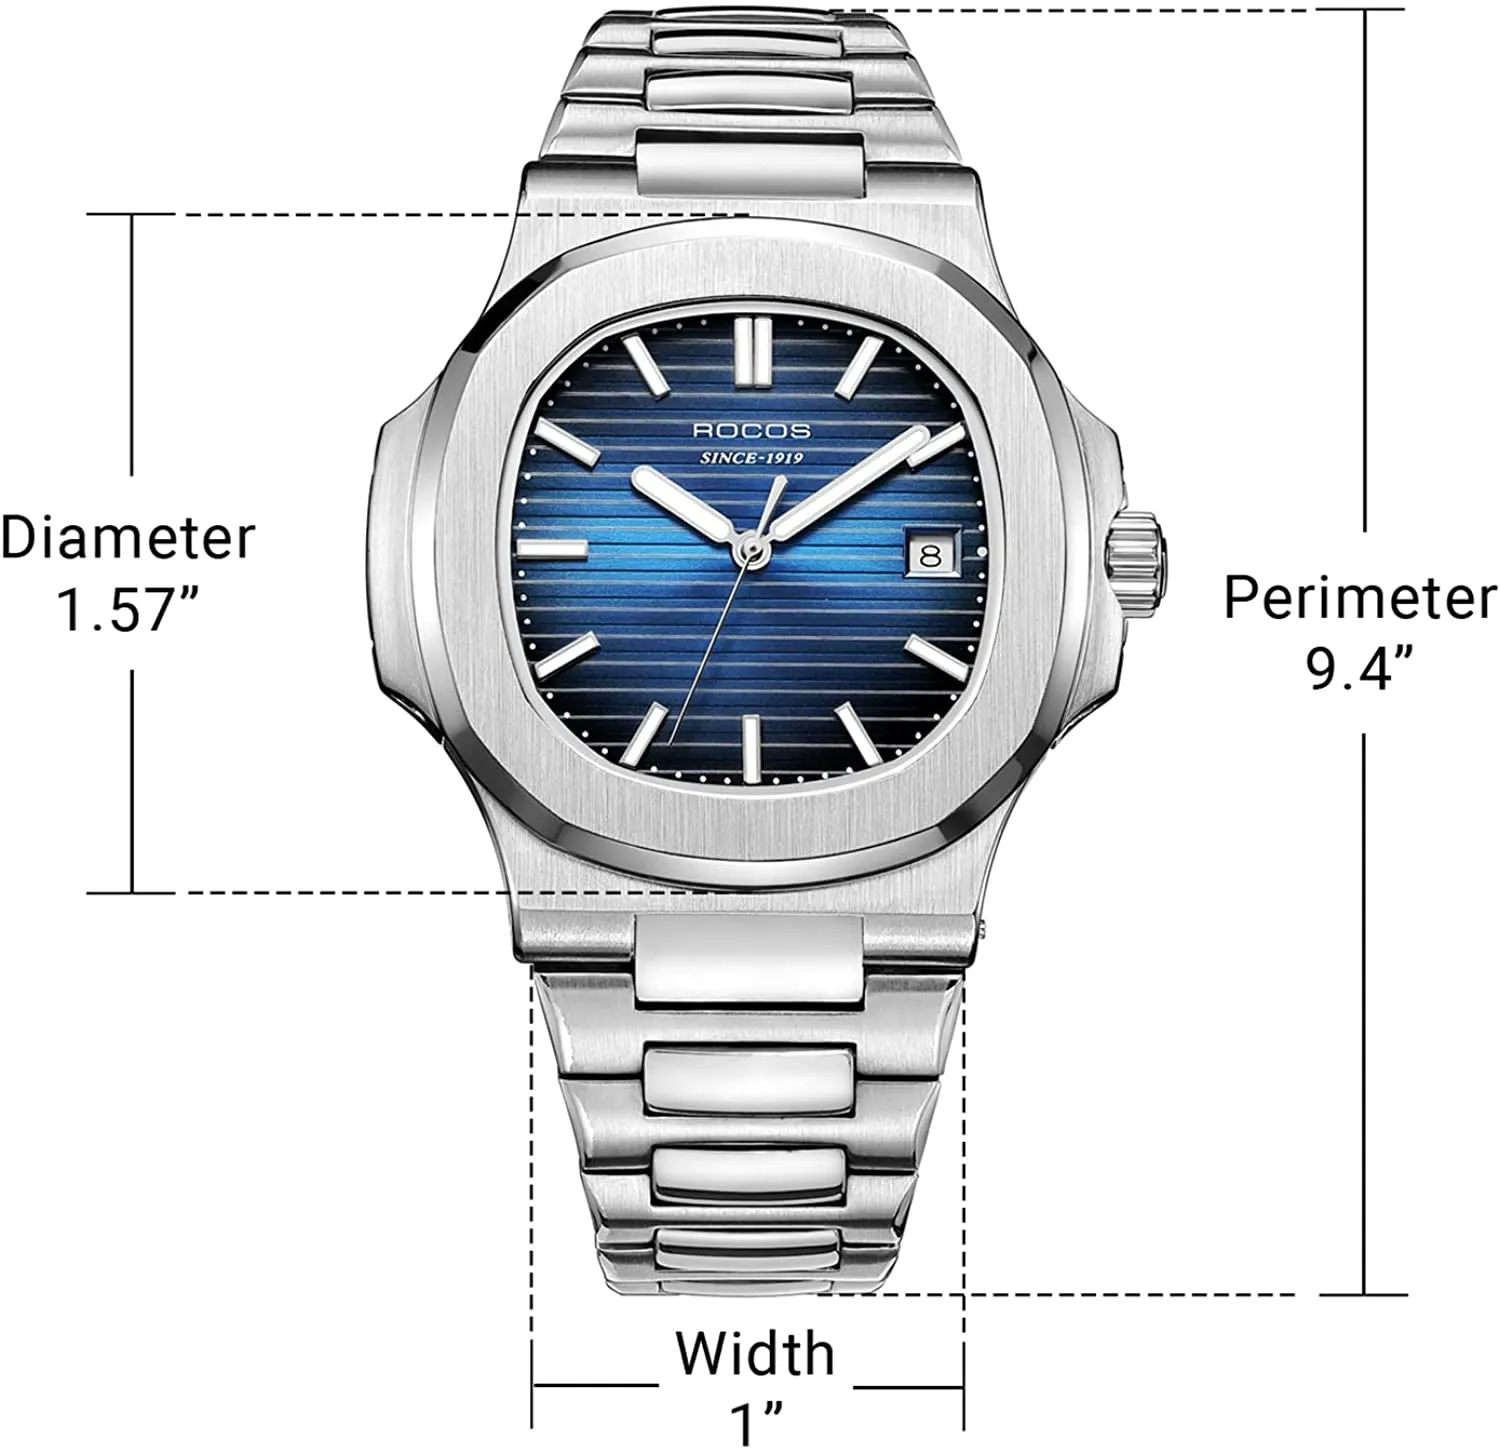 Relógio automático para homens Analog impermeável com aço inoxidável completo Esqueleto de luxo clássico elegante homens relógios de pulso dos homens